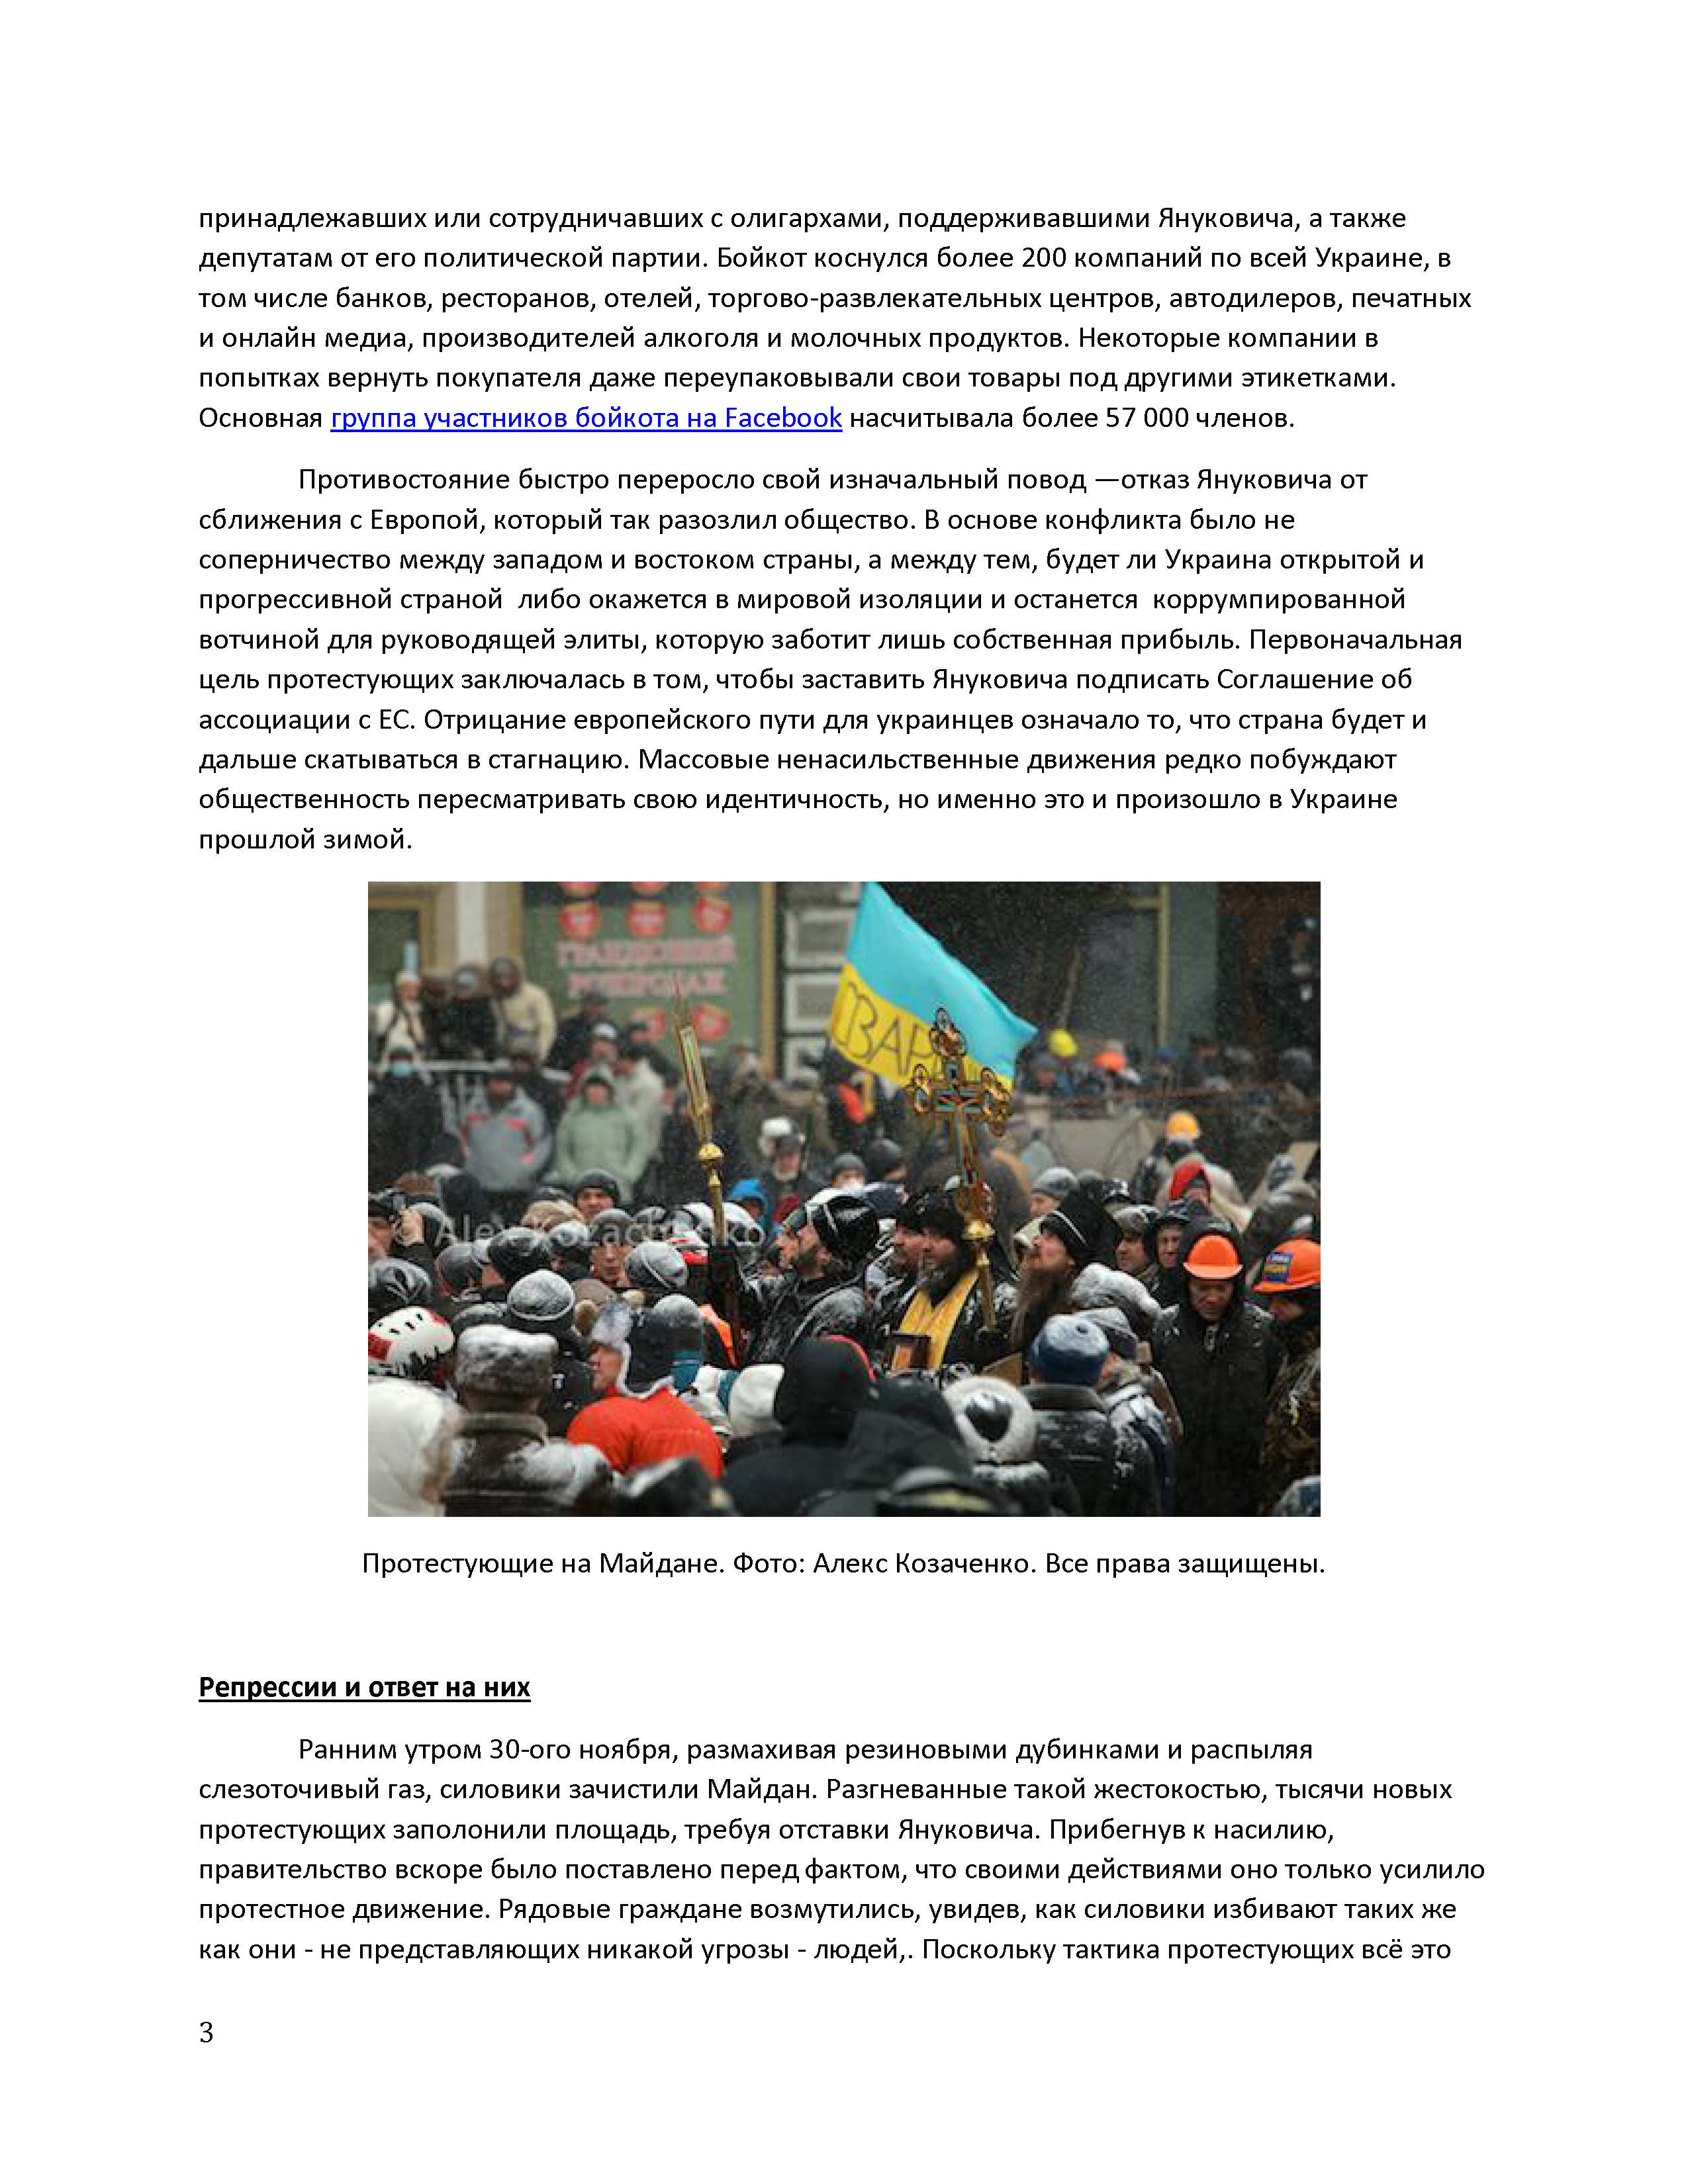 Украина: ненасильственная победа